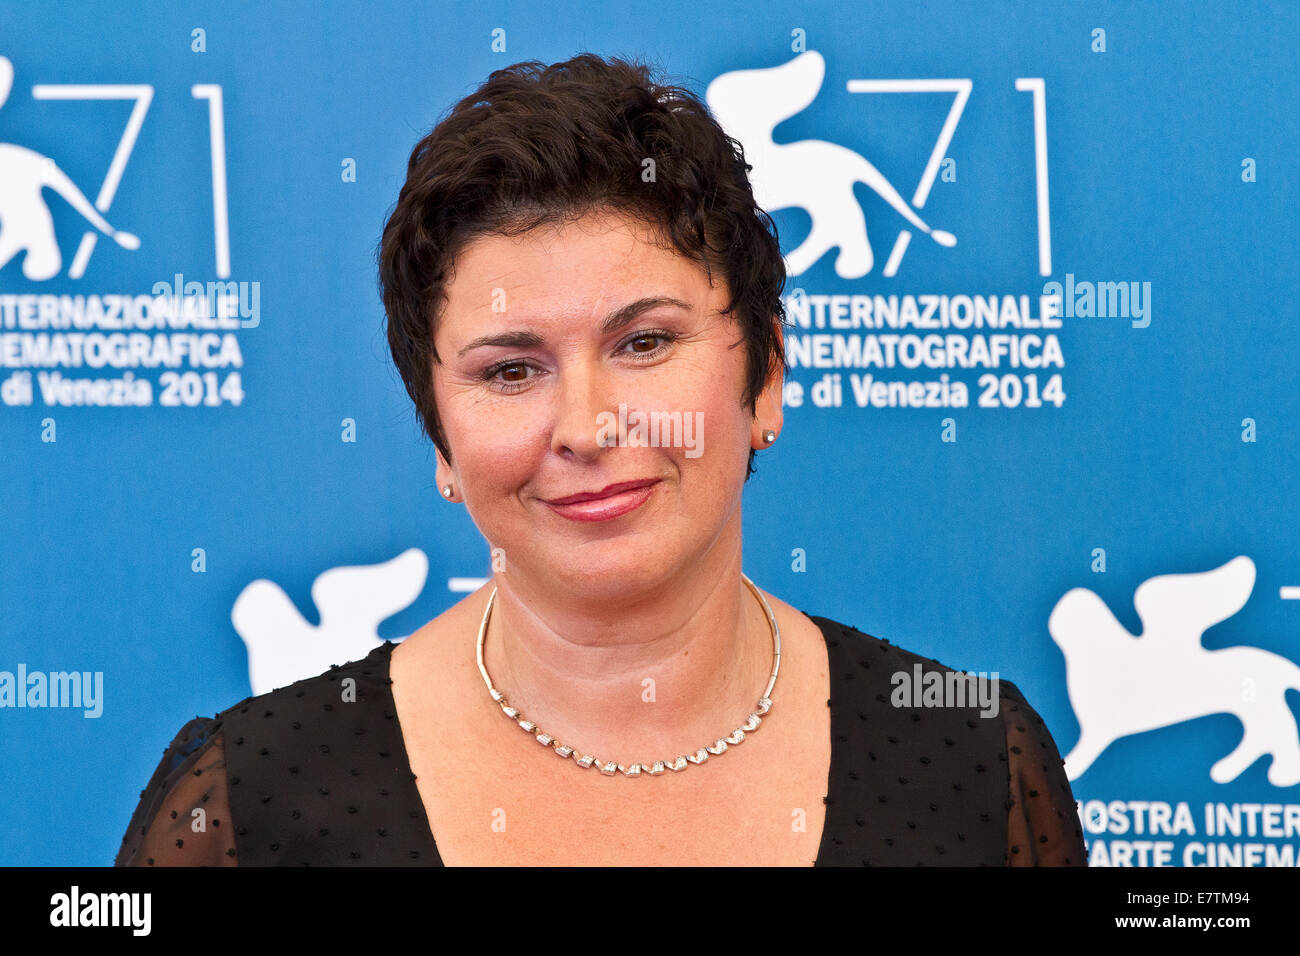 Italy Veneto Venice Festival Of Cinema 2014 Jasna Zalica Actress Stock Photo